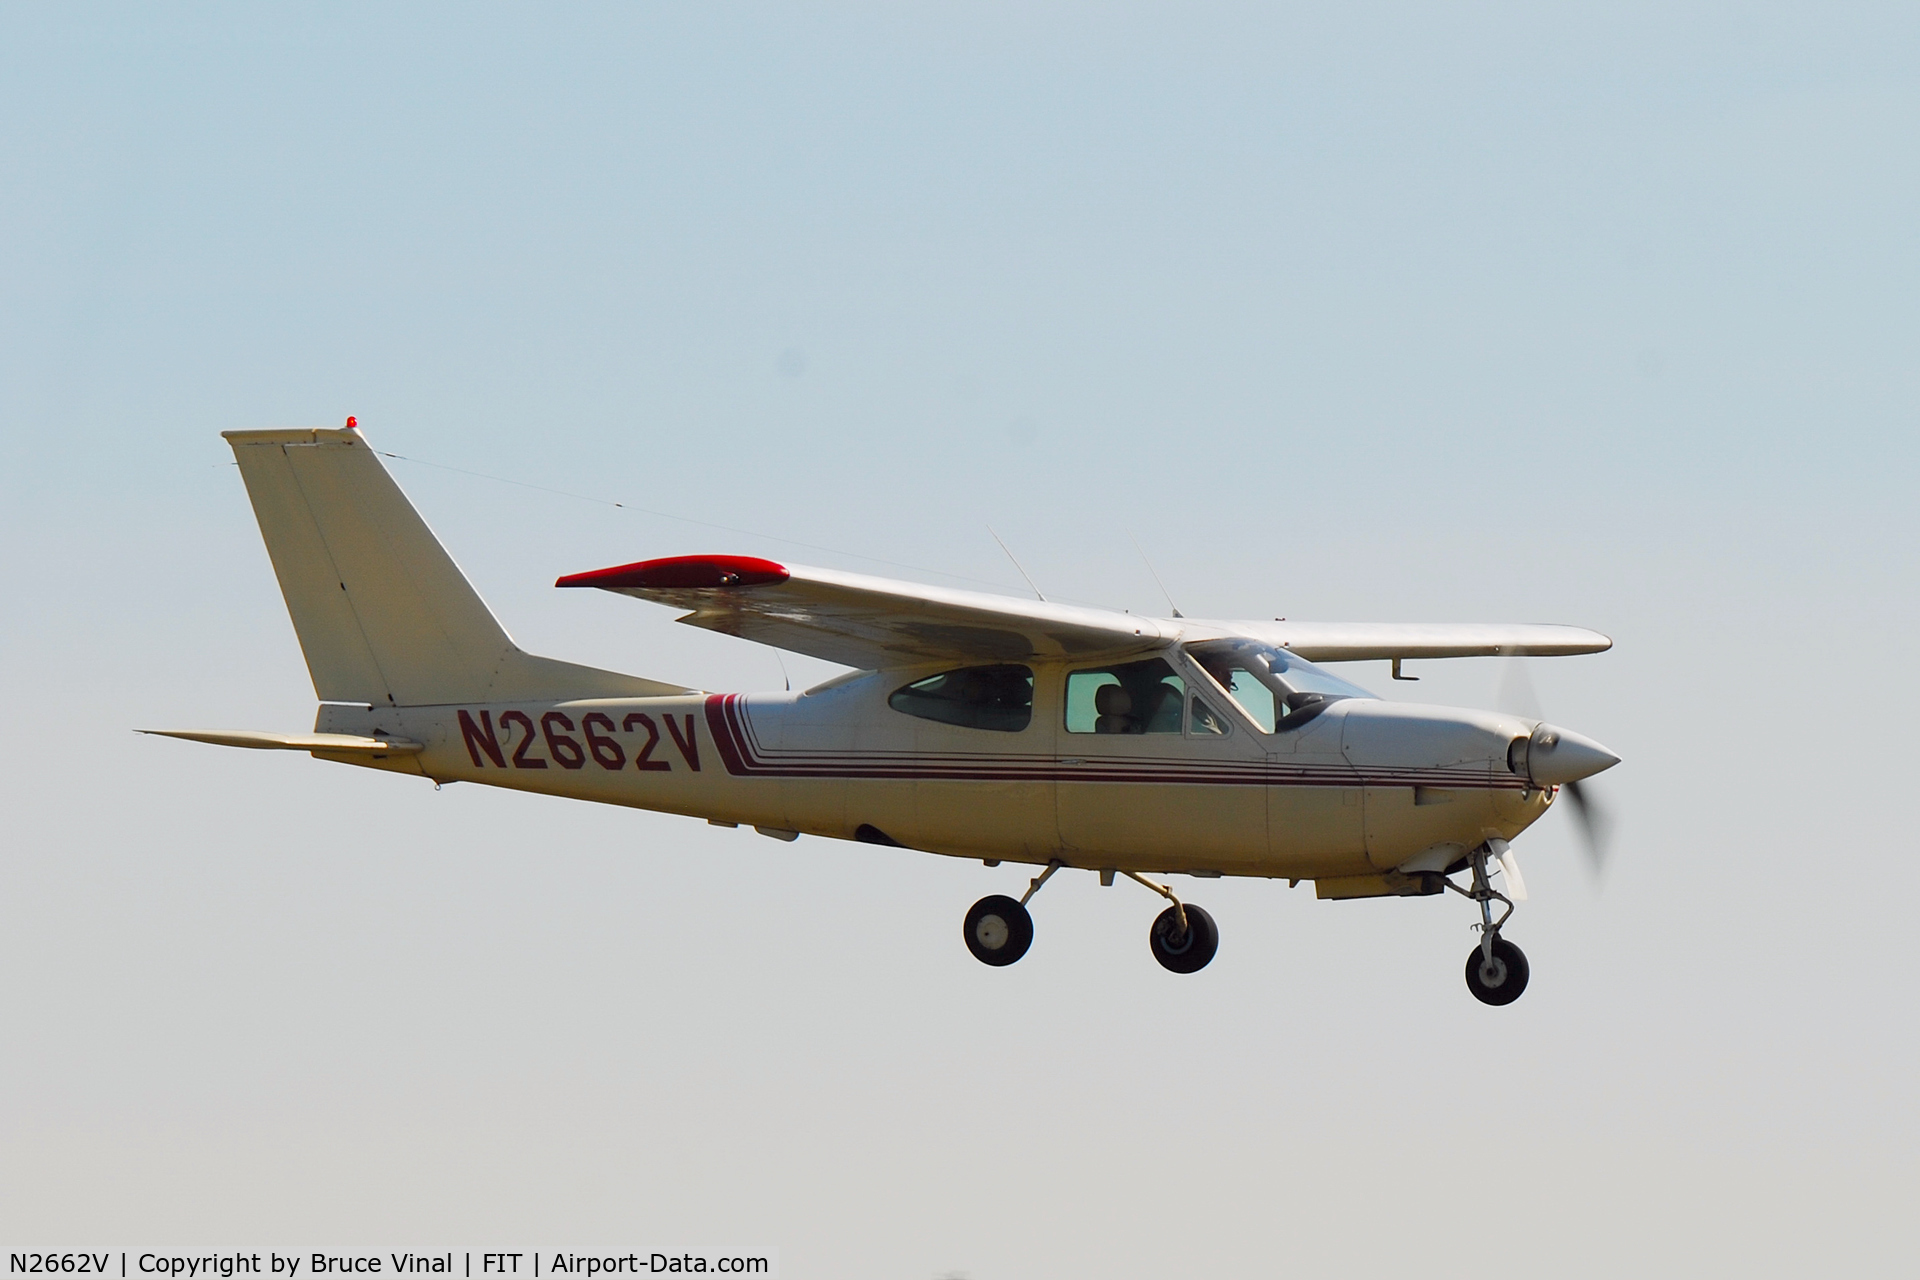 N2662V, 1974 Cessna 177RG Cardinal C/N 177RG0647, Fitchburg Mun. Airport